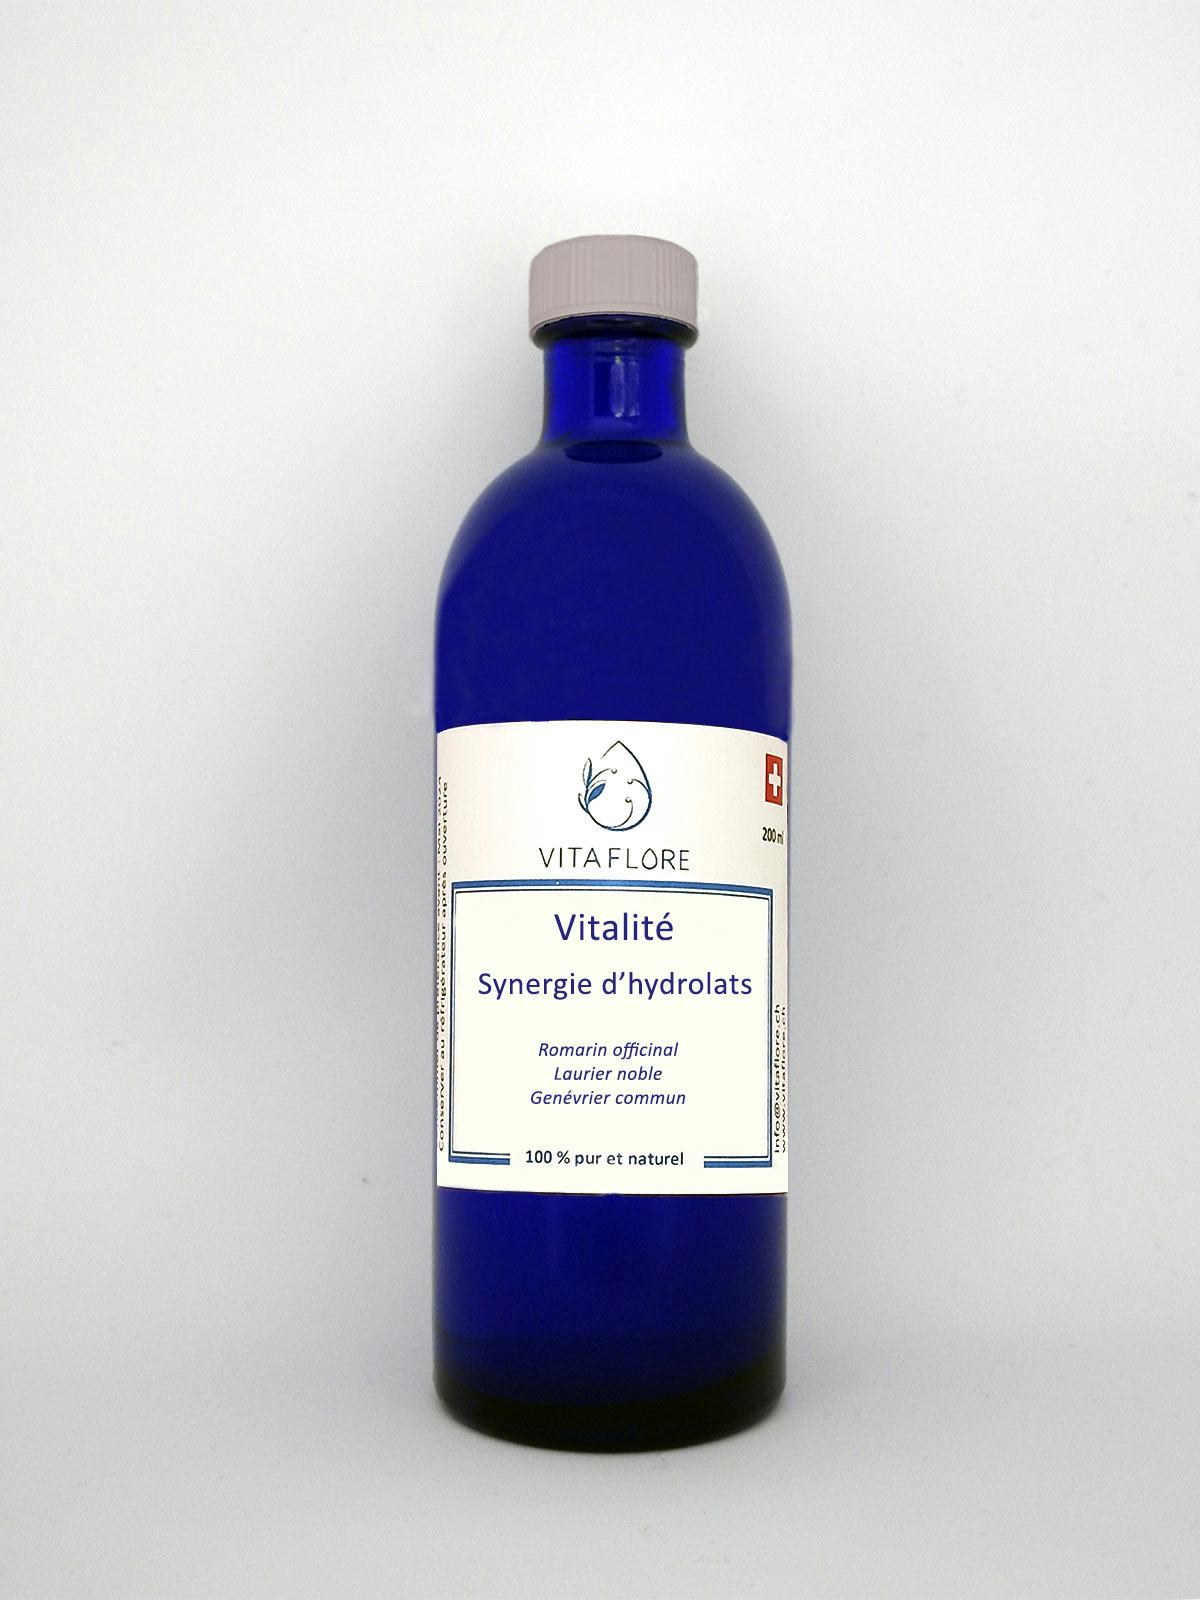 Synergie d’hydrolats – Vitalité, prodotto artigianale per la vendita diretta in Svizzera